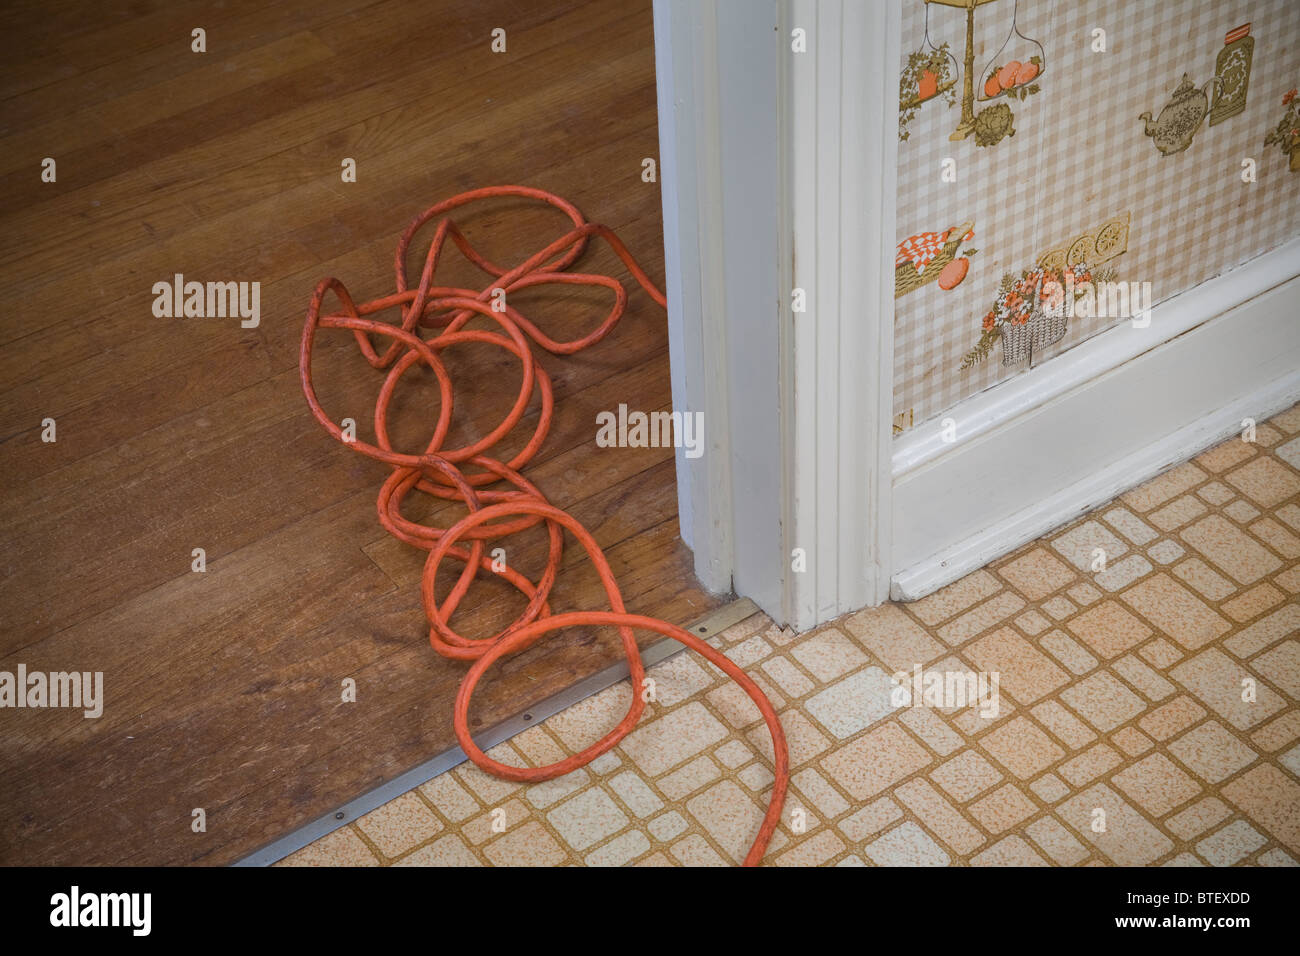 Orange Extension Cord On Floor Of House Stock Photo 32290201 Alamy